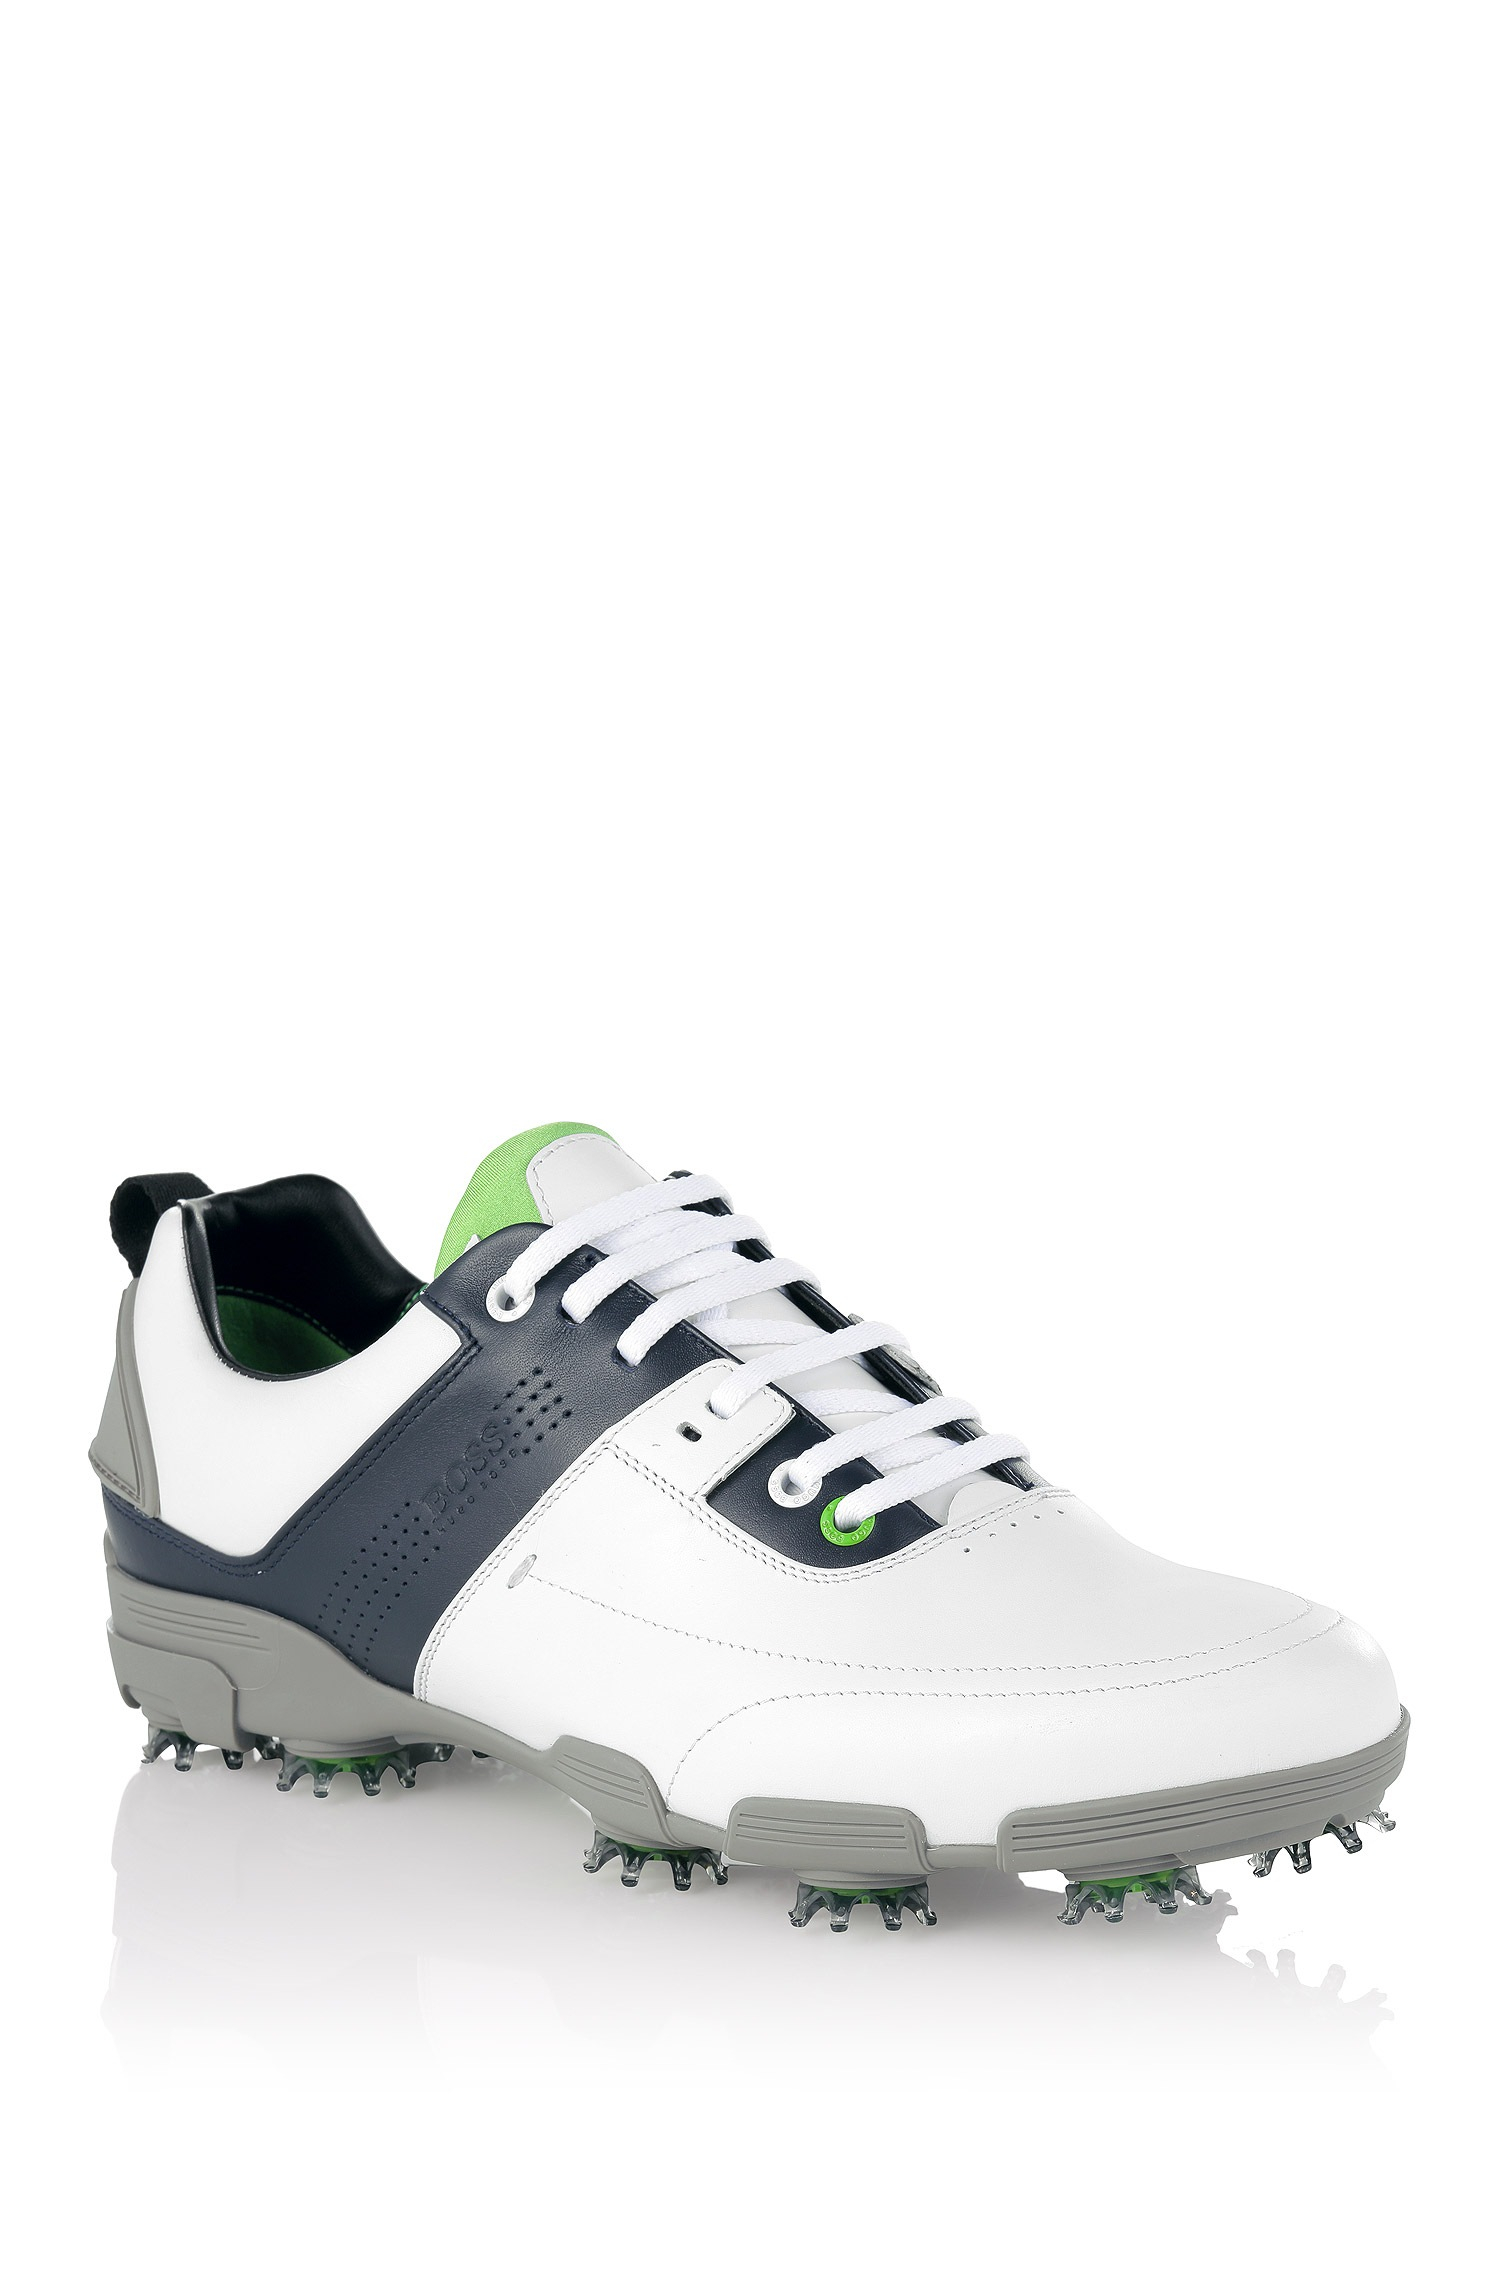 Hugo Boss Golf Shoes White Britain, SAVE 55% - lutheranems.com